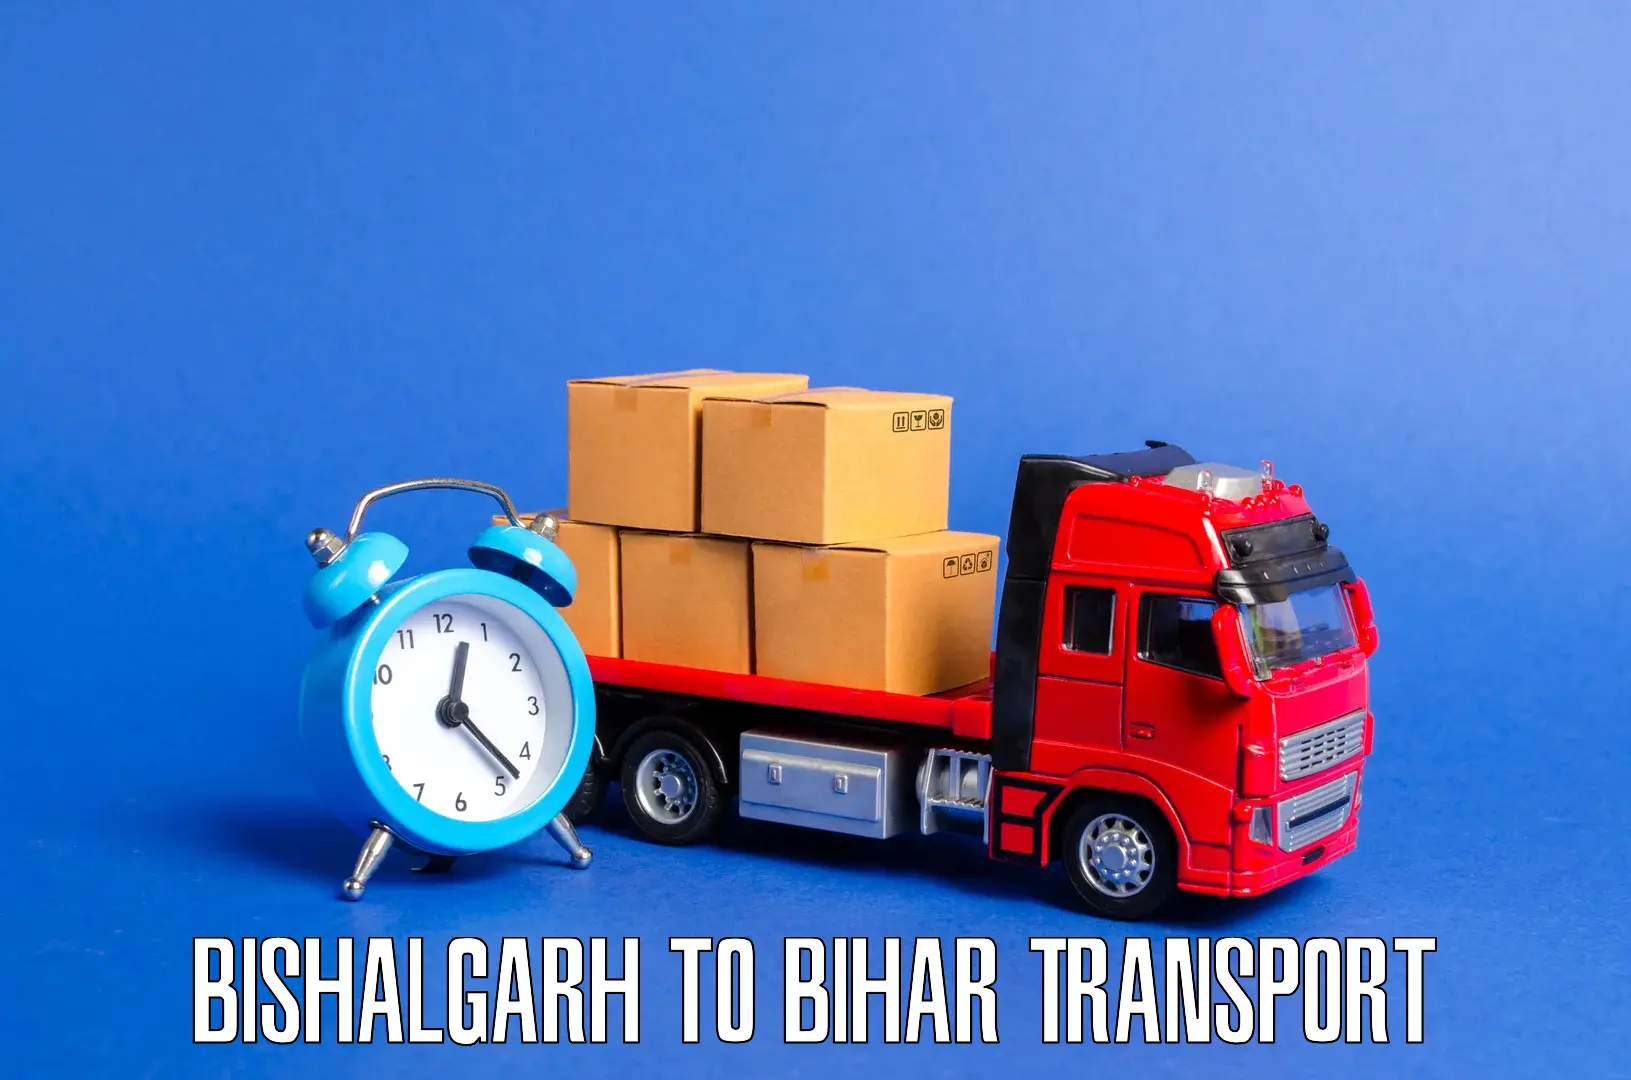 Bike transport service Bishalgarh to Phulparas